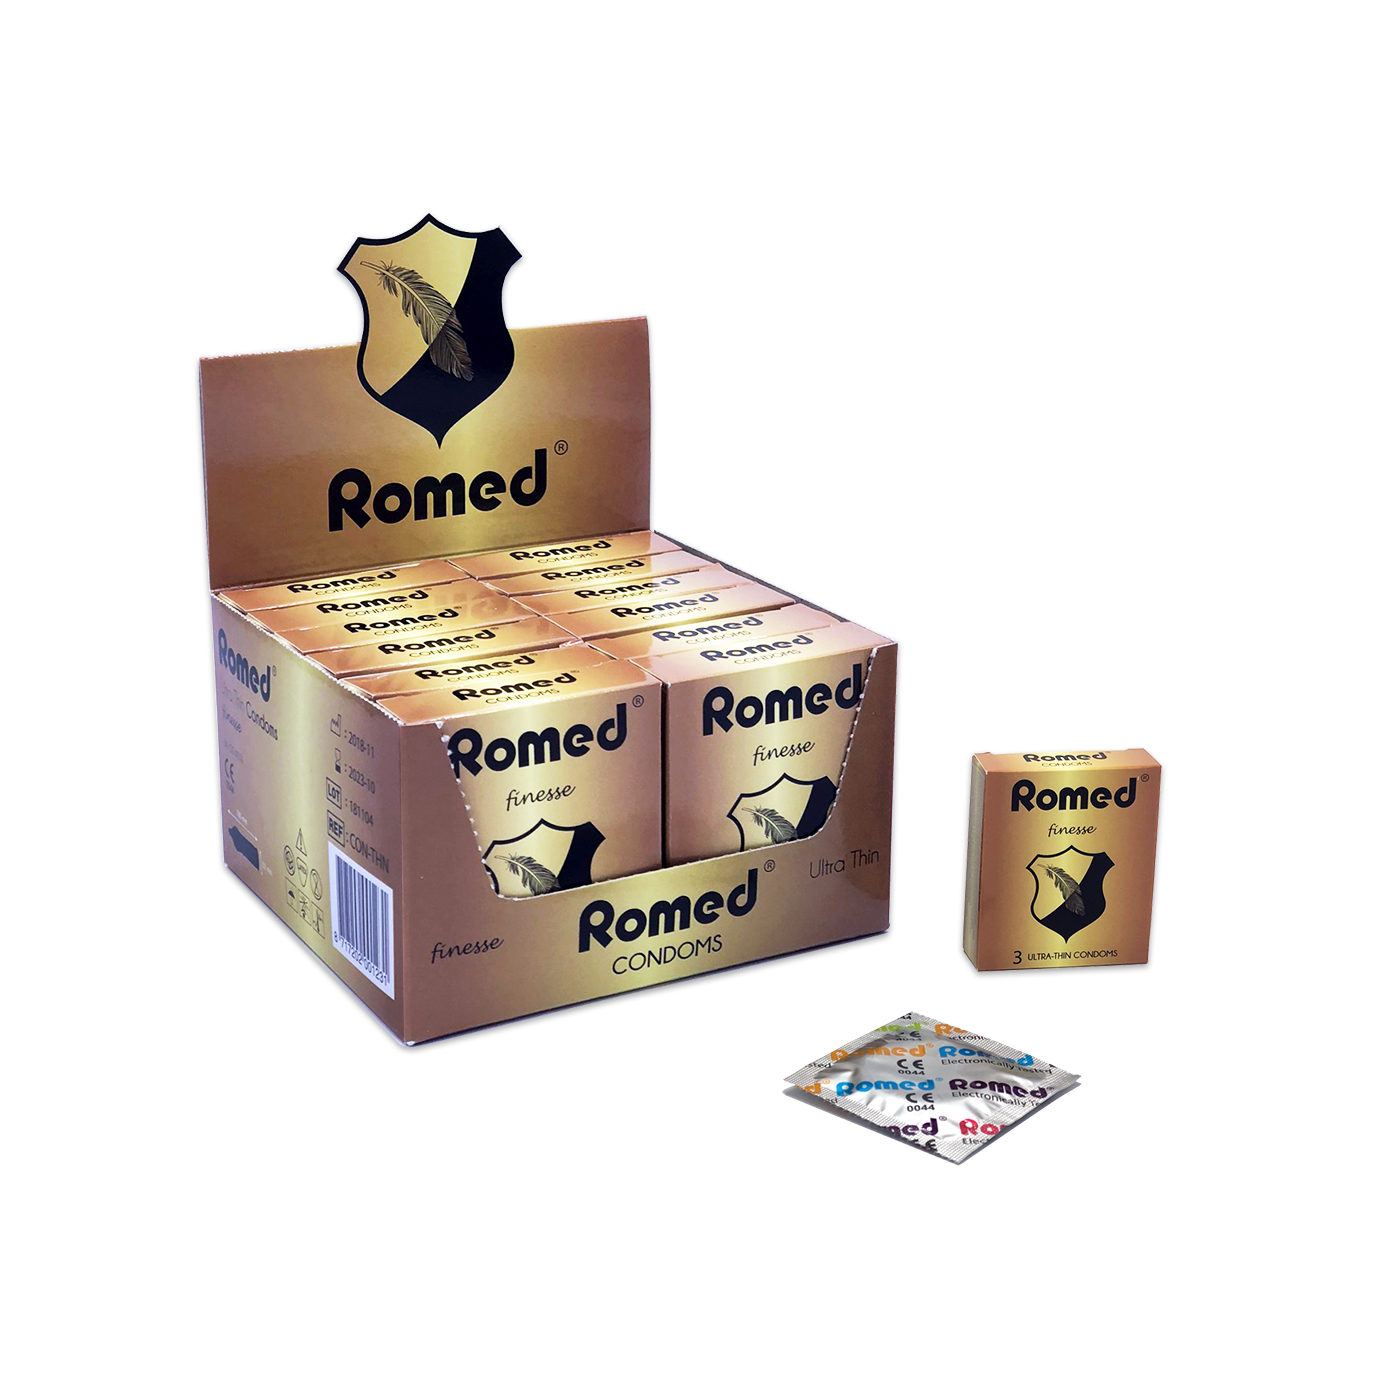 CON-THN Romed Kondome extra dünn, Streifen zu 3 Stück in einem Päckchen, in Cellophan, 48 Päckchen = 144 Stück in einer Schachtel, (= 1 Gros) 30 x 144 Stück = 4.320 Stück im Karton.